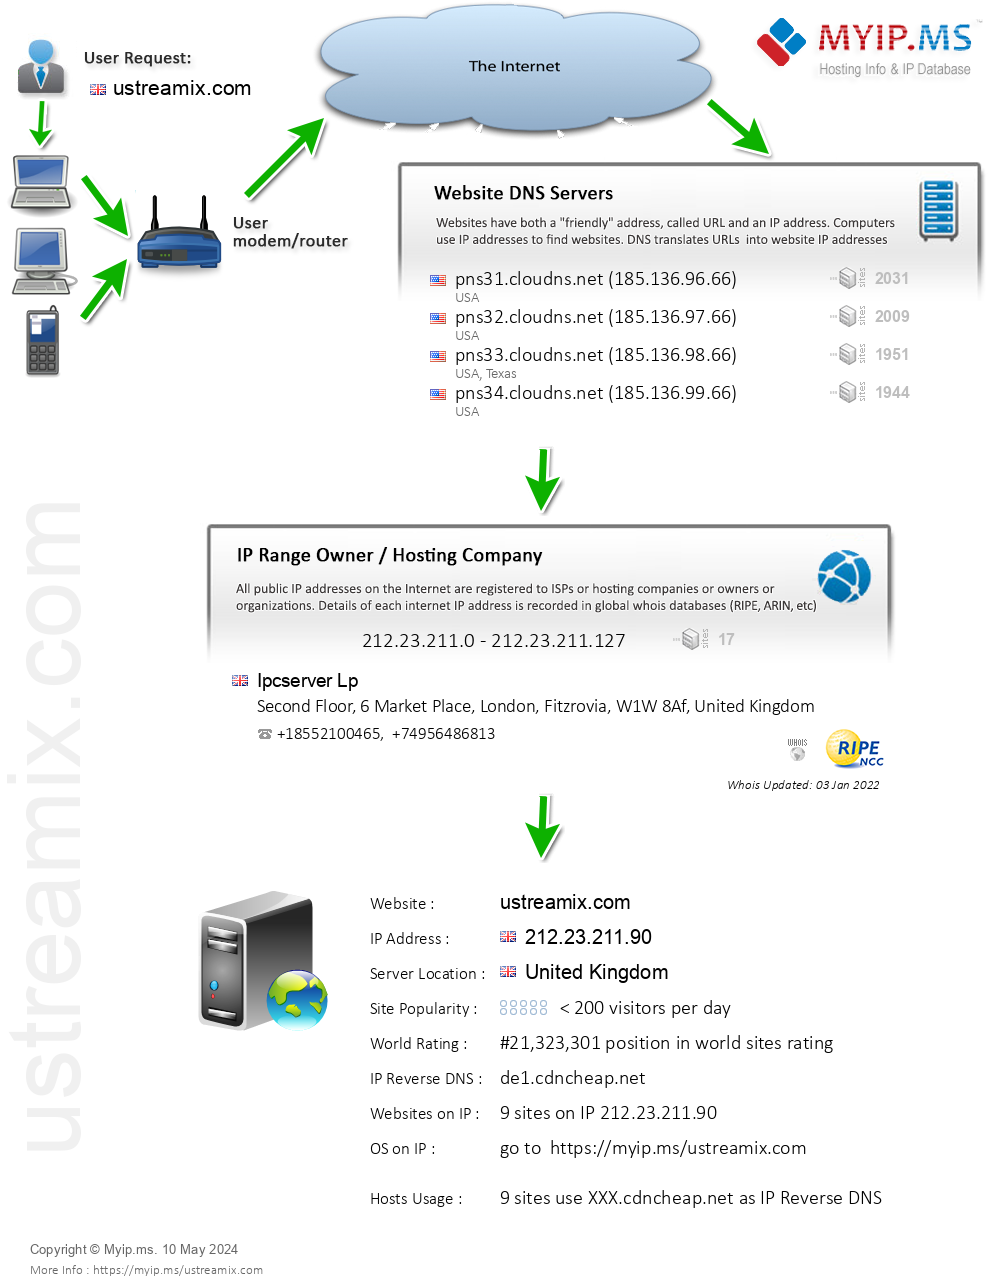 Ustreamix.com - Website Hosting Visual IP Diagram